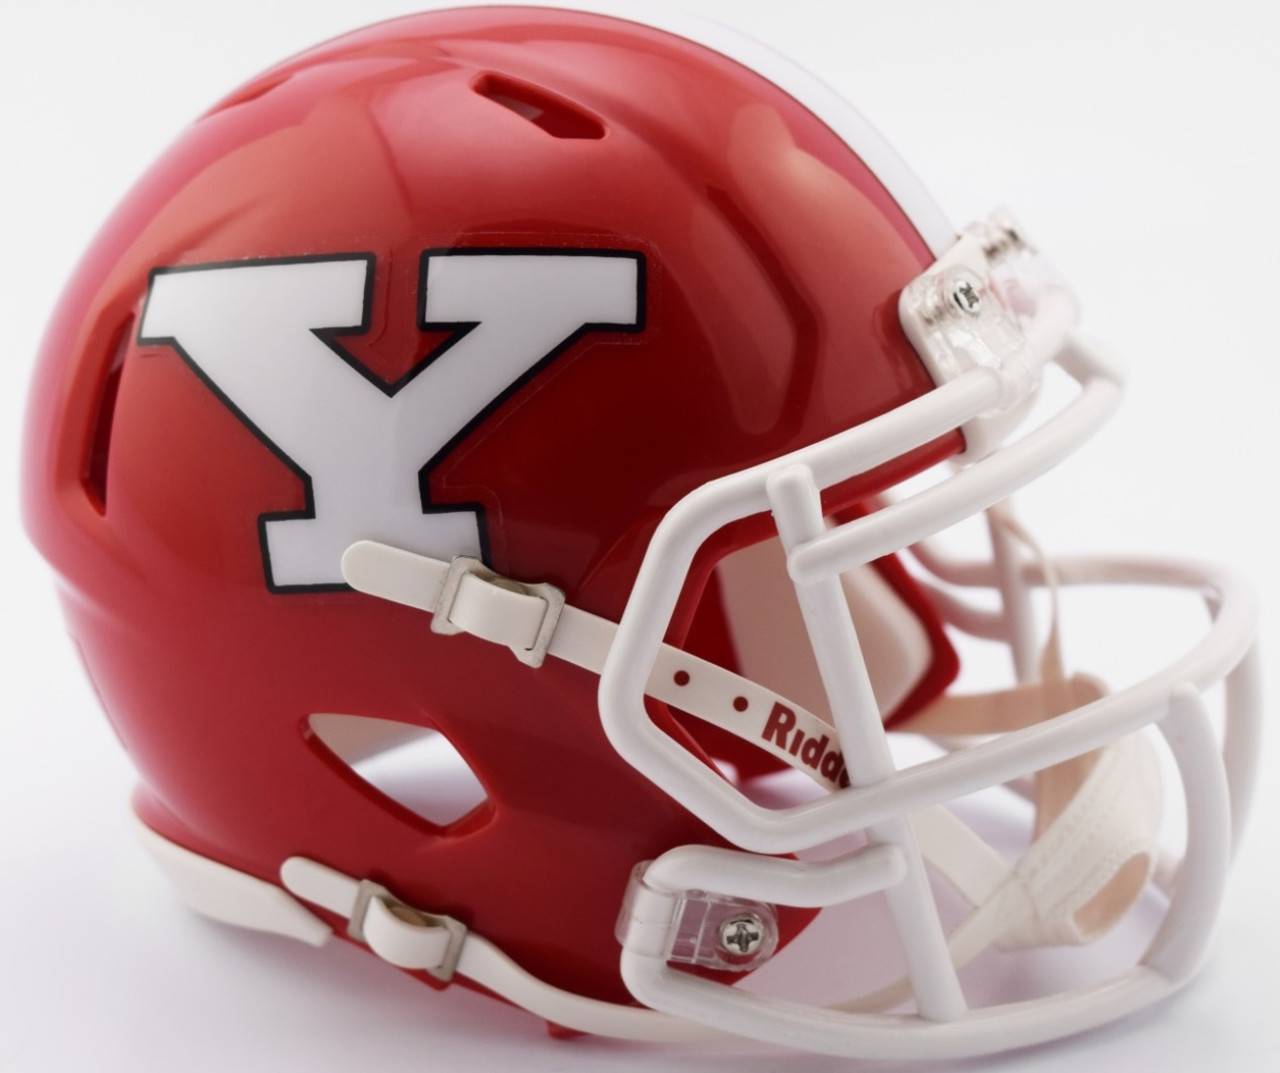 LAS VEGAS RAIDERS NFL Football Helmet with REVO YELLOW-GOLD Visor / Eye  Shield